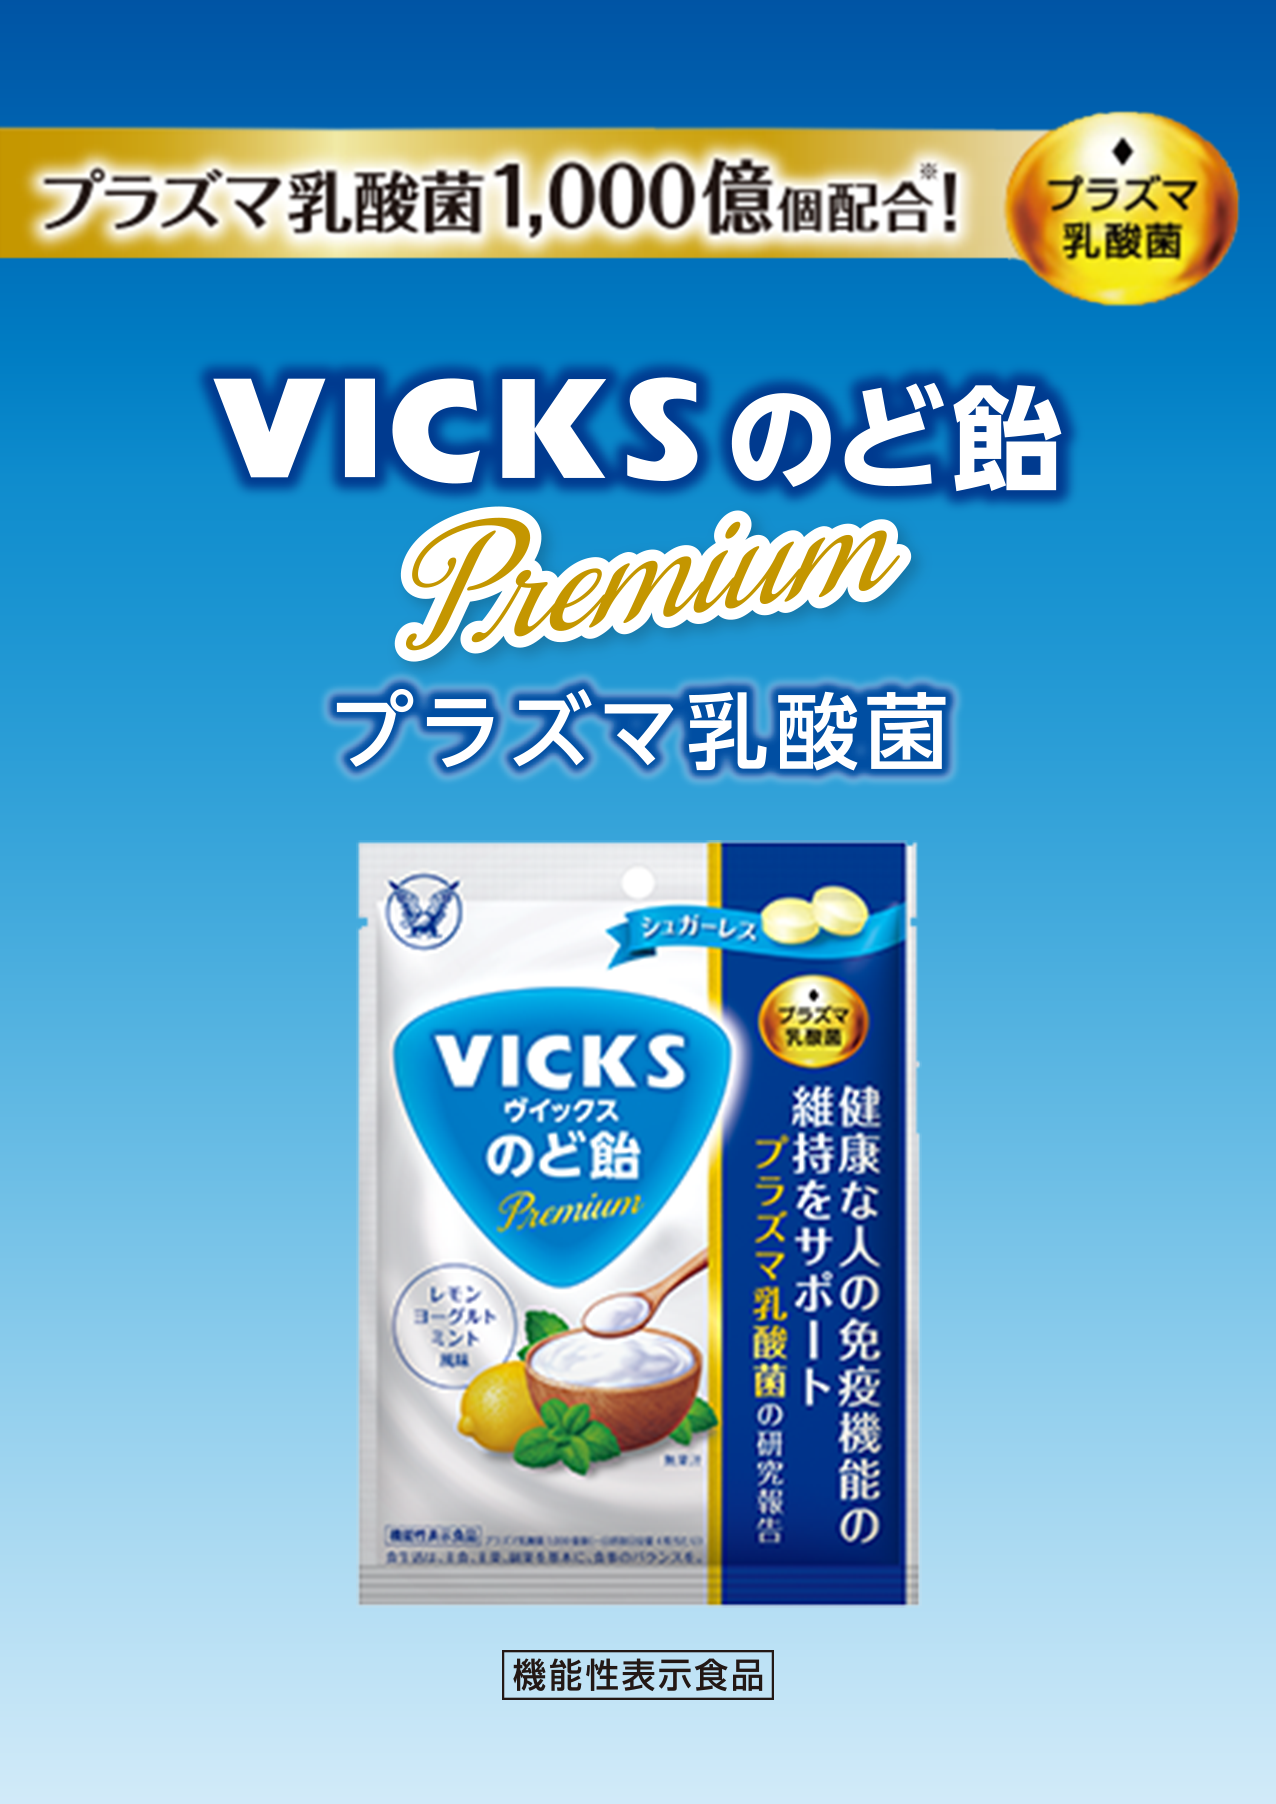 プラズマ乳酸菌1000億個配合VICKSのど飴Premium